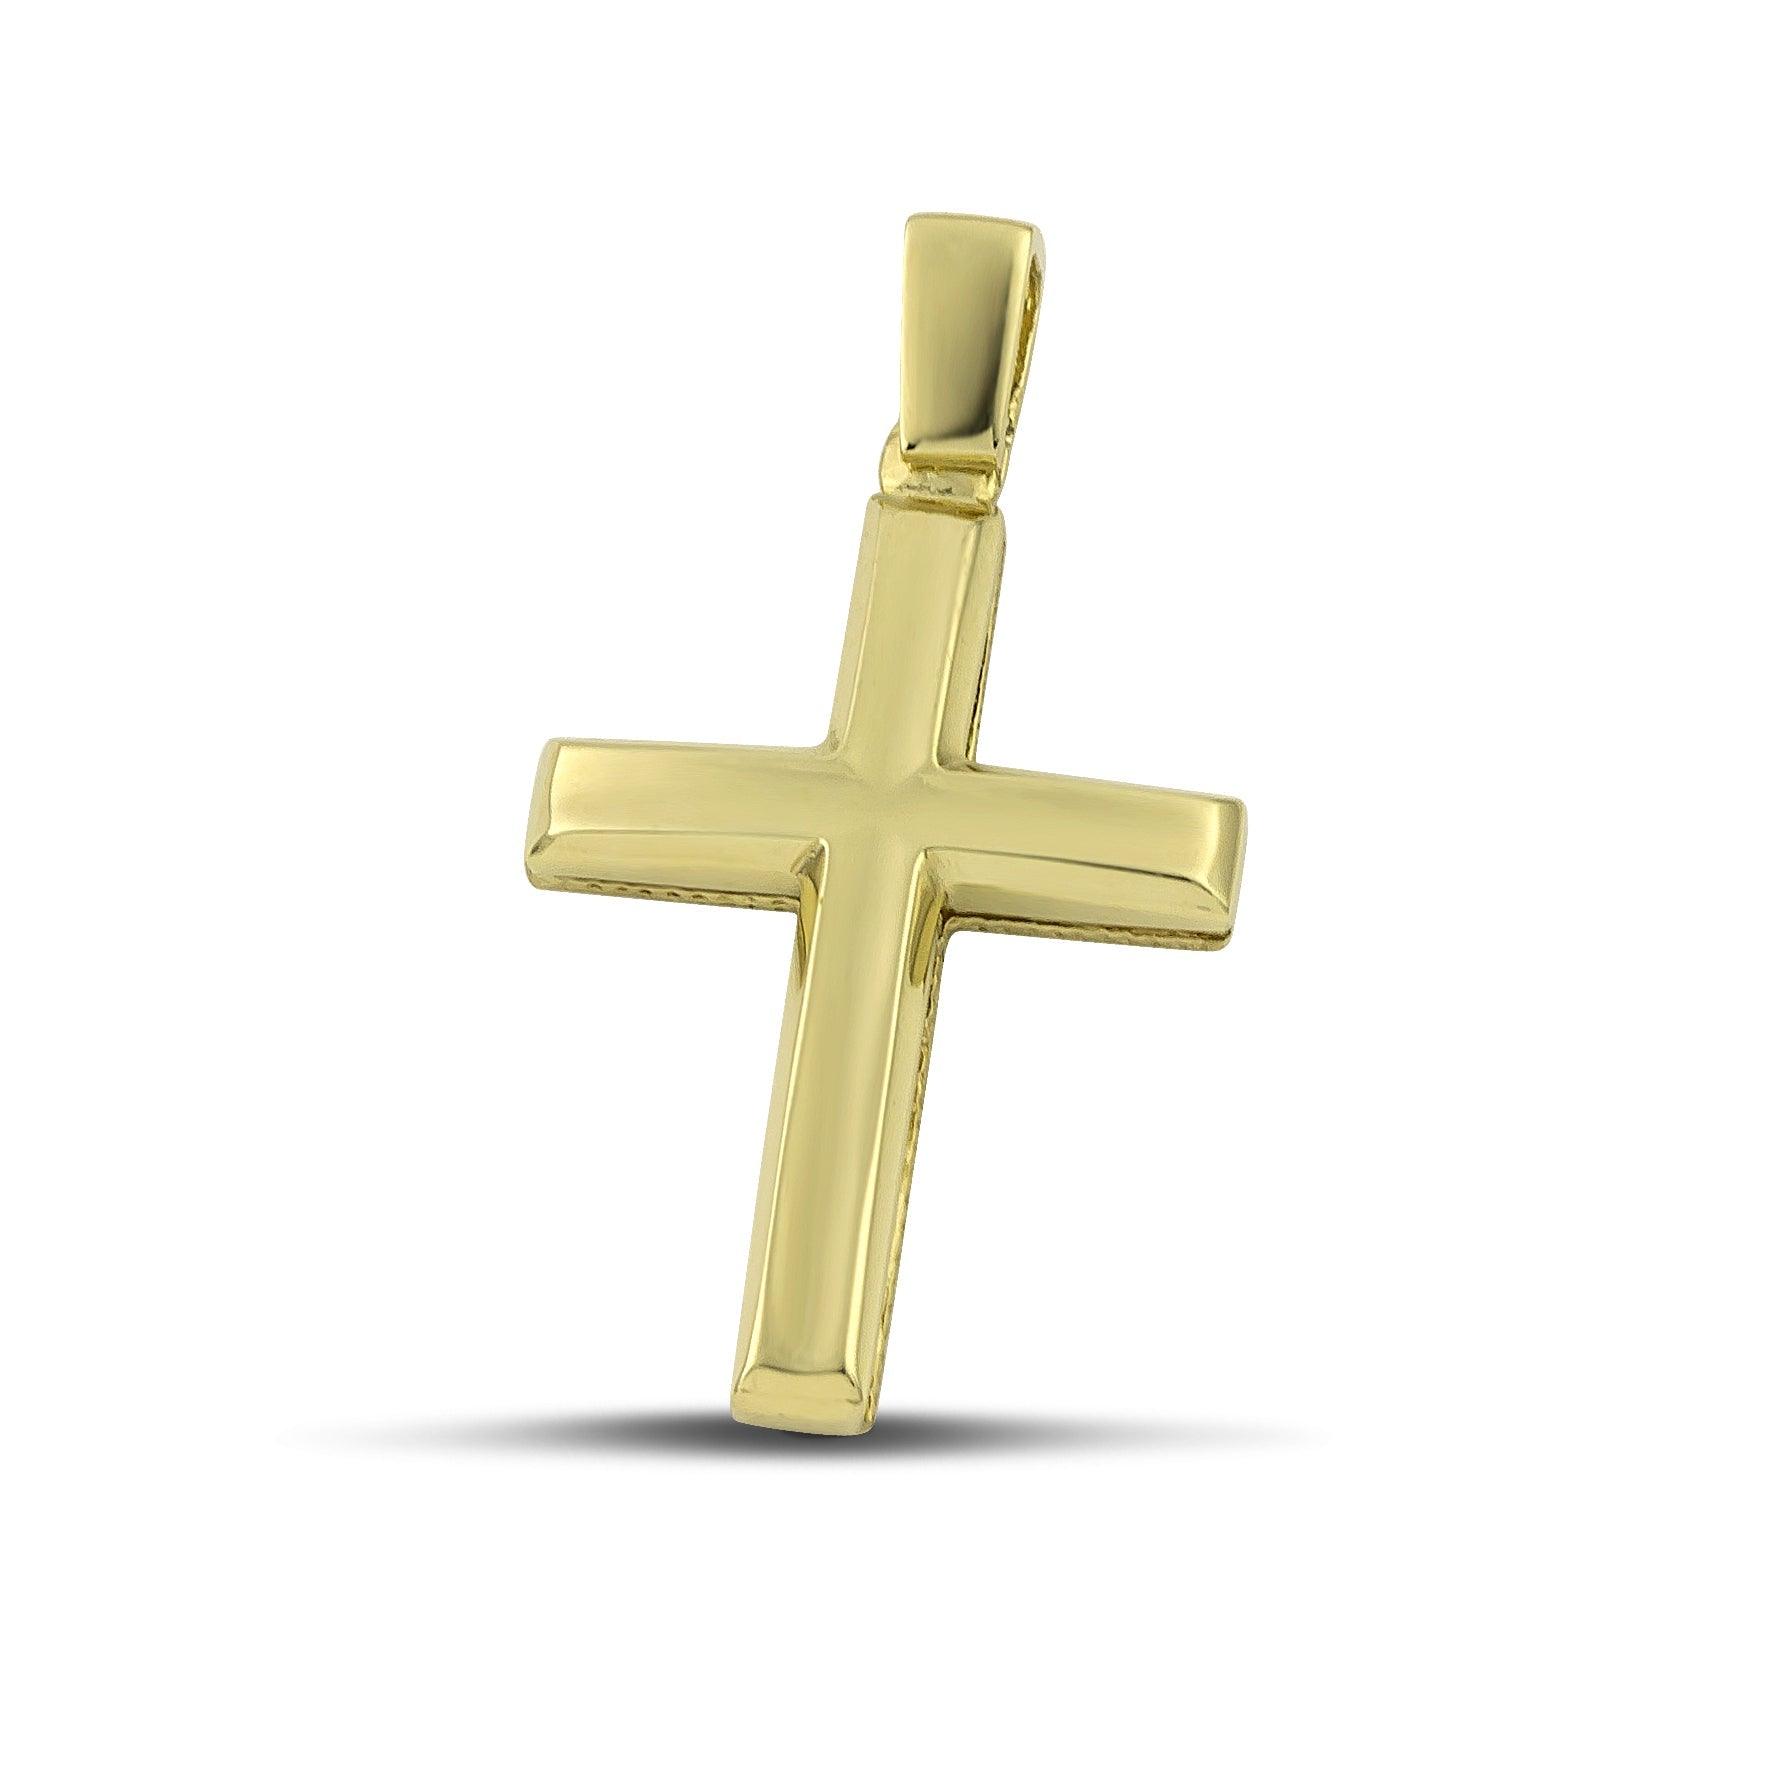 Ανδρικός σταυρός βάπτισης χρυσός Κ14, με λουστράτη επιφάνεια. 